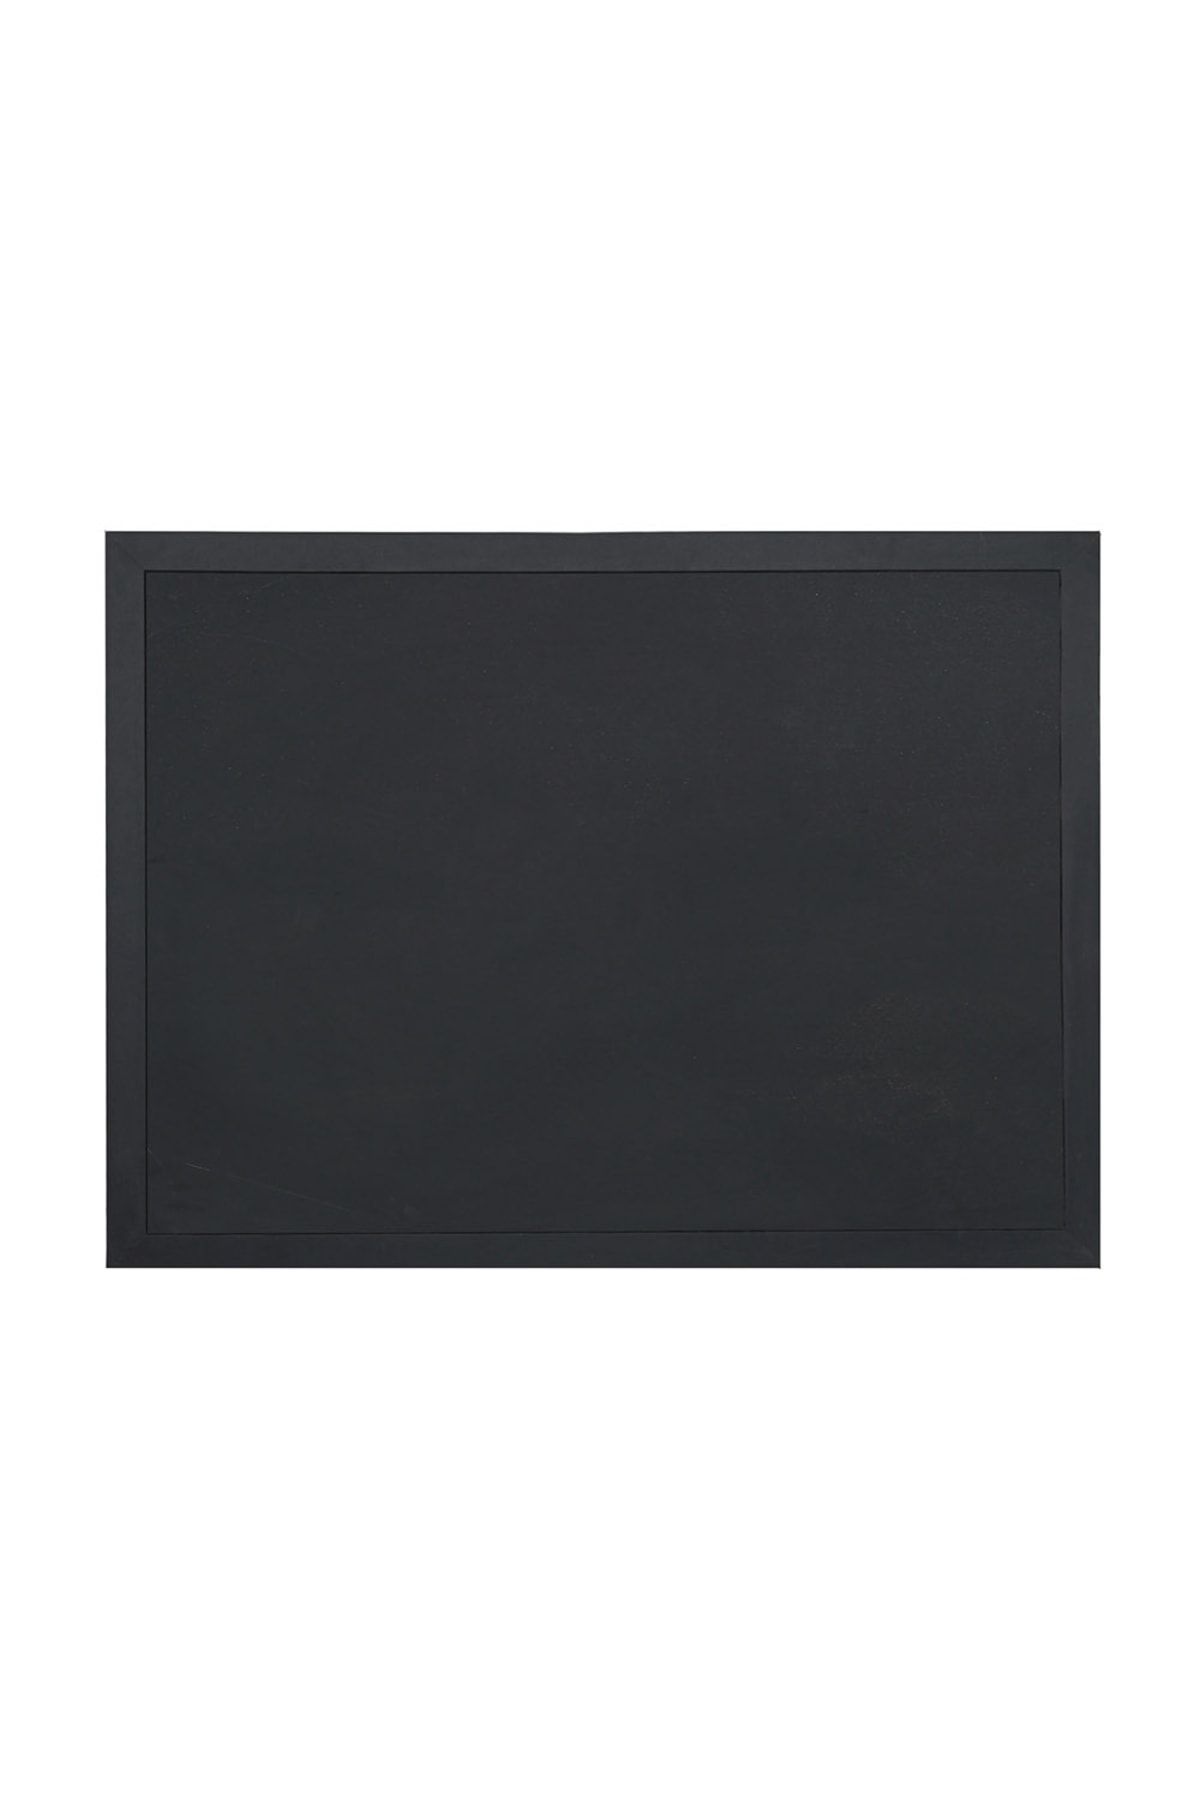 Vivekka 100x140 Siyah Ahşap Çerçeve Laminat Tebeşir Yazı Tahtası- Siyah